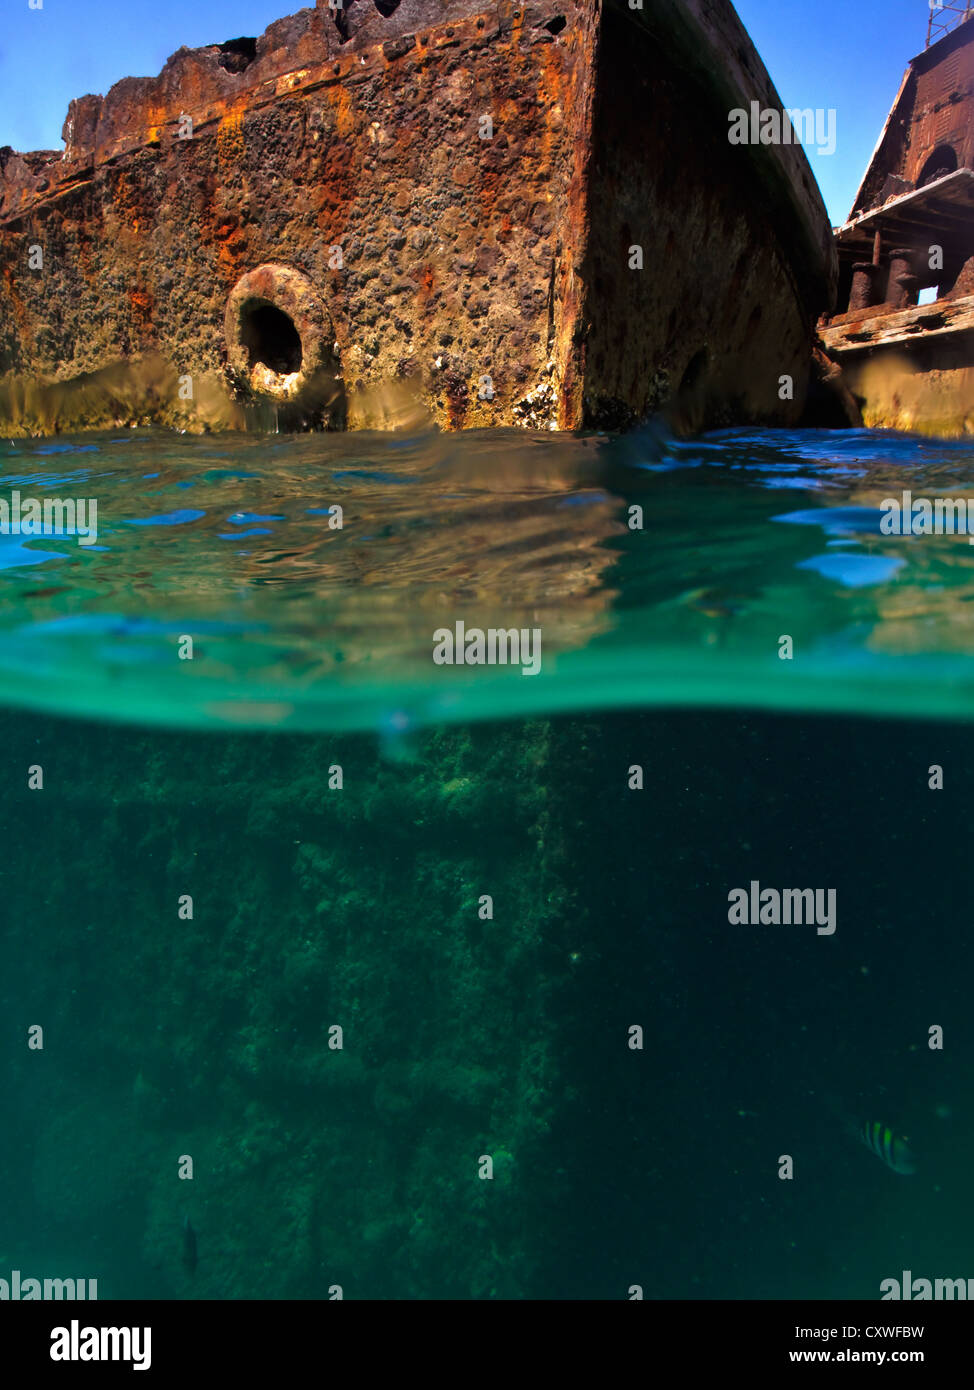 Rusty scafi di relitti di navi naufragate a Moreton Island, in australia fotografato dal subacqueo a livello dell'acqua metà immersa nel mare turchese Foto Stock